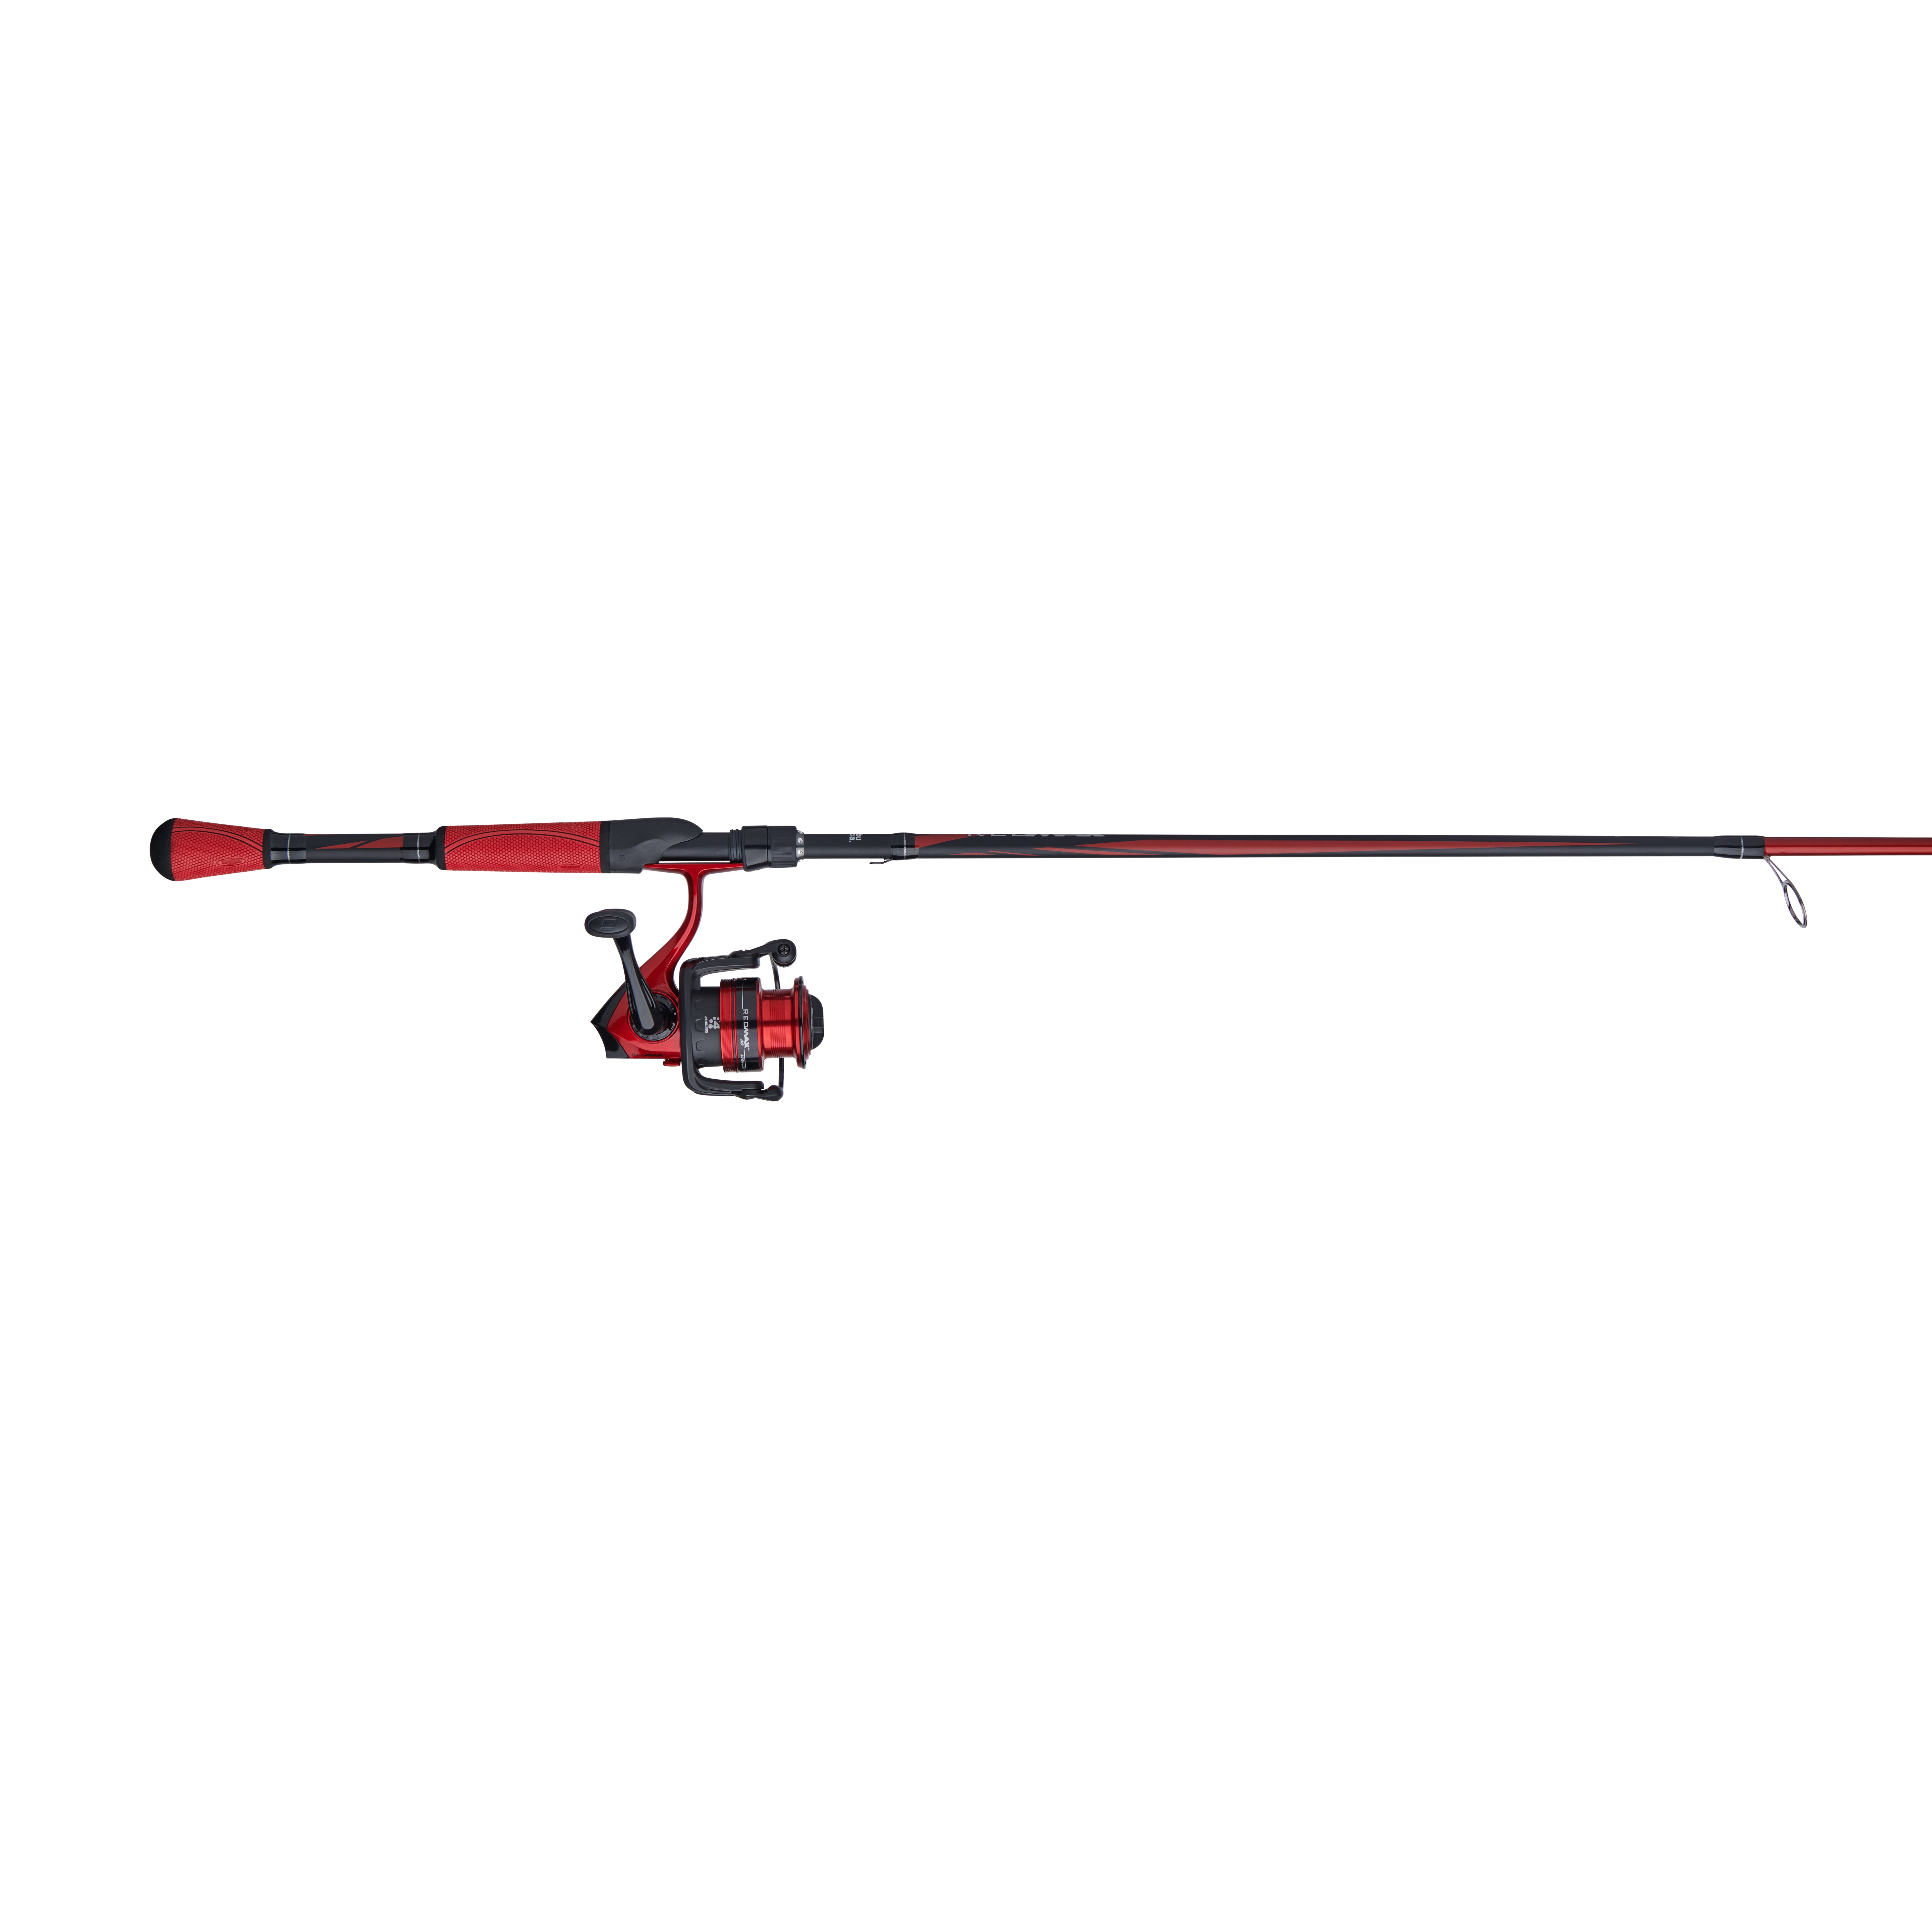 Abu Garcia Red Max Spinning Fishing Combo, Size: 7' - 1pc - Medium